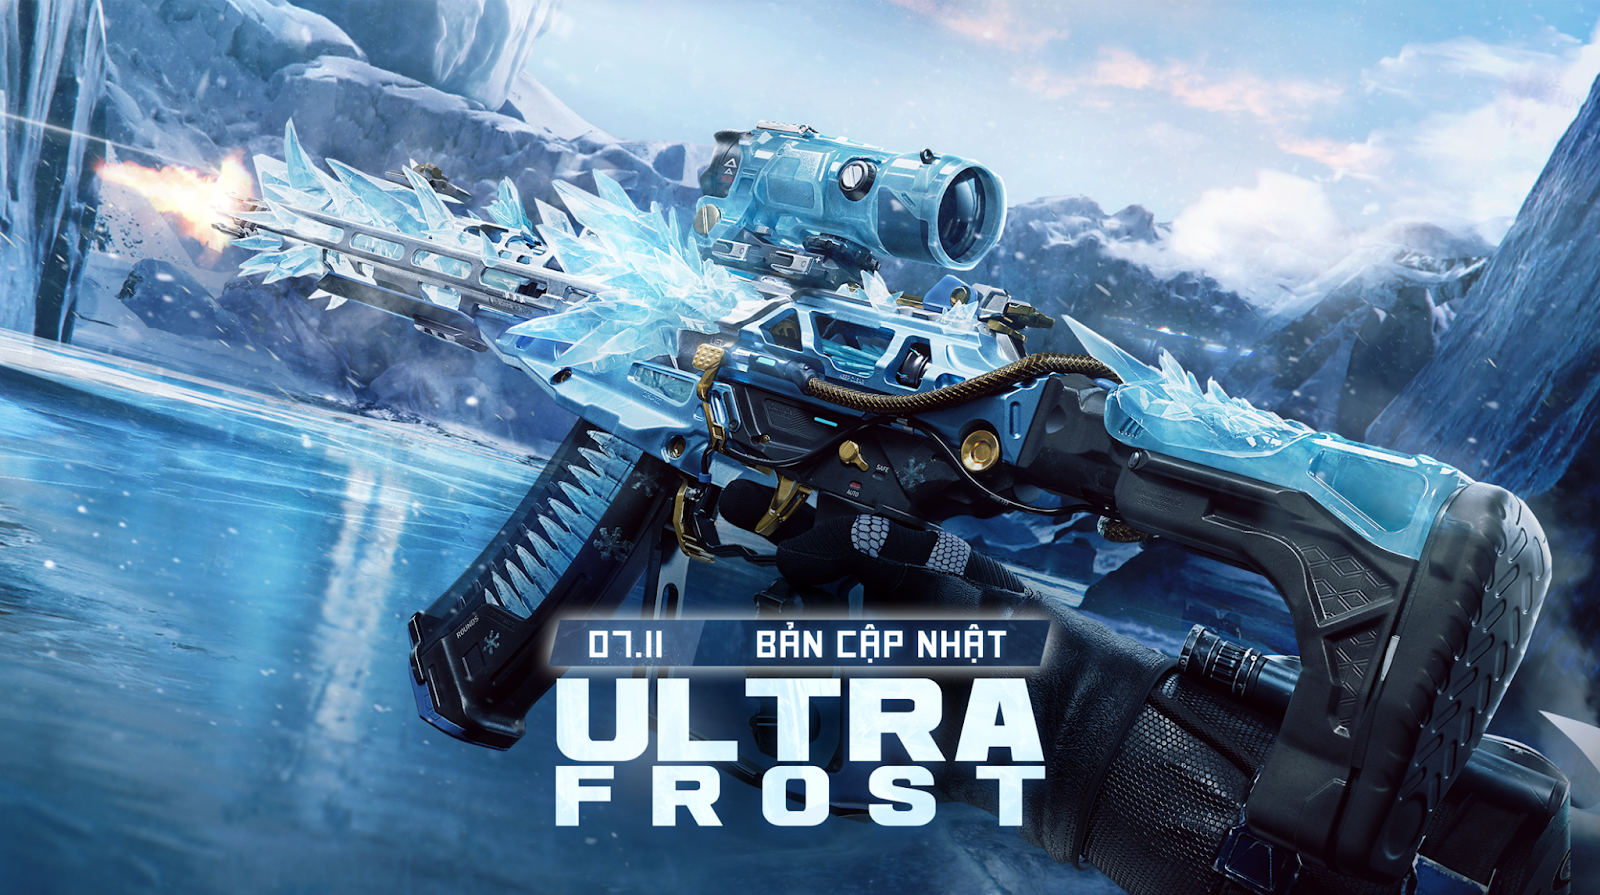 Truy Kích PC cho ra mắt Bản Cập Nhật mới Ultra Frost với điểm nhấn là combo súng mang skin đậm chất băng giá vào ngày 7/11